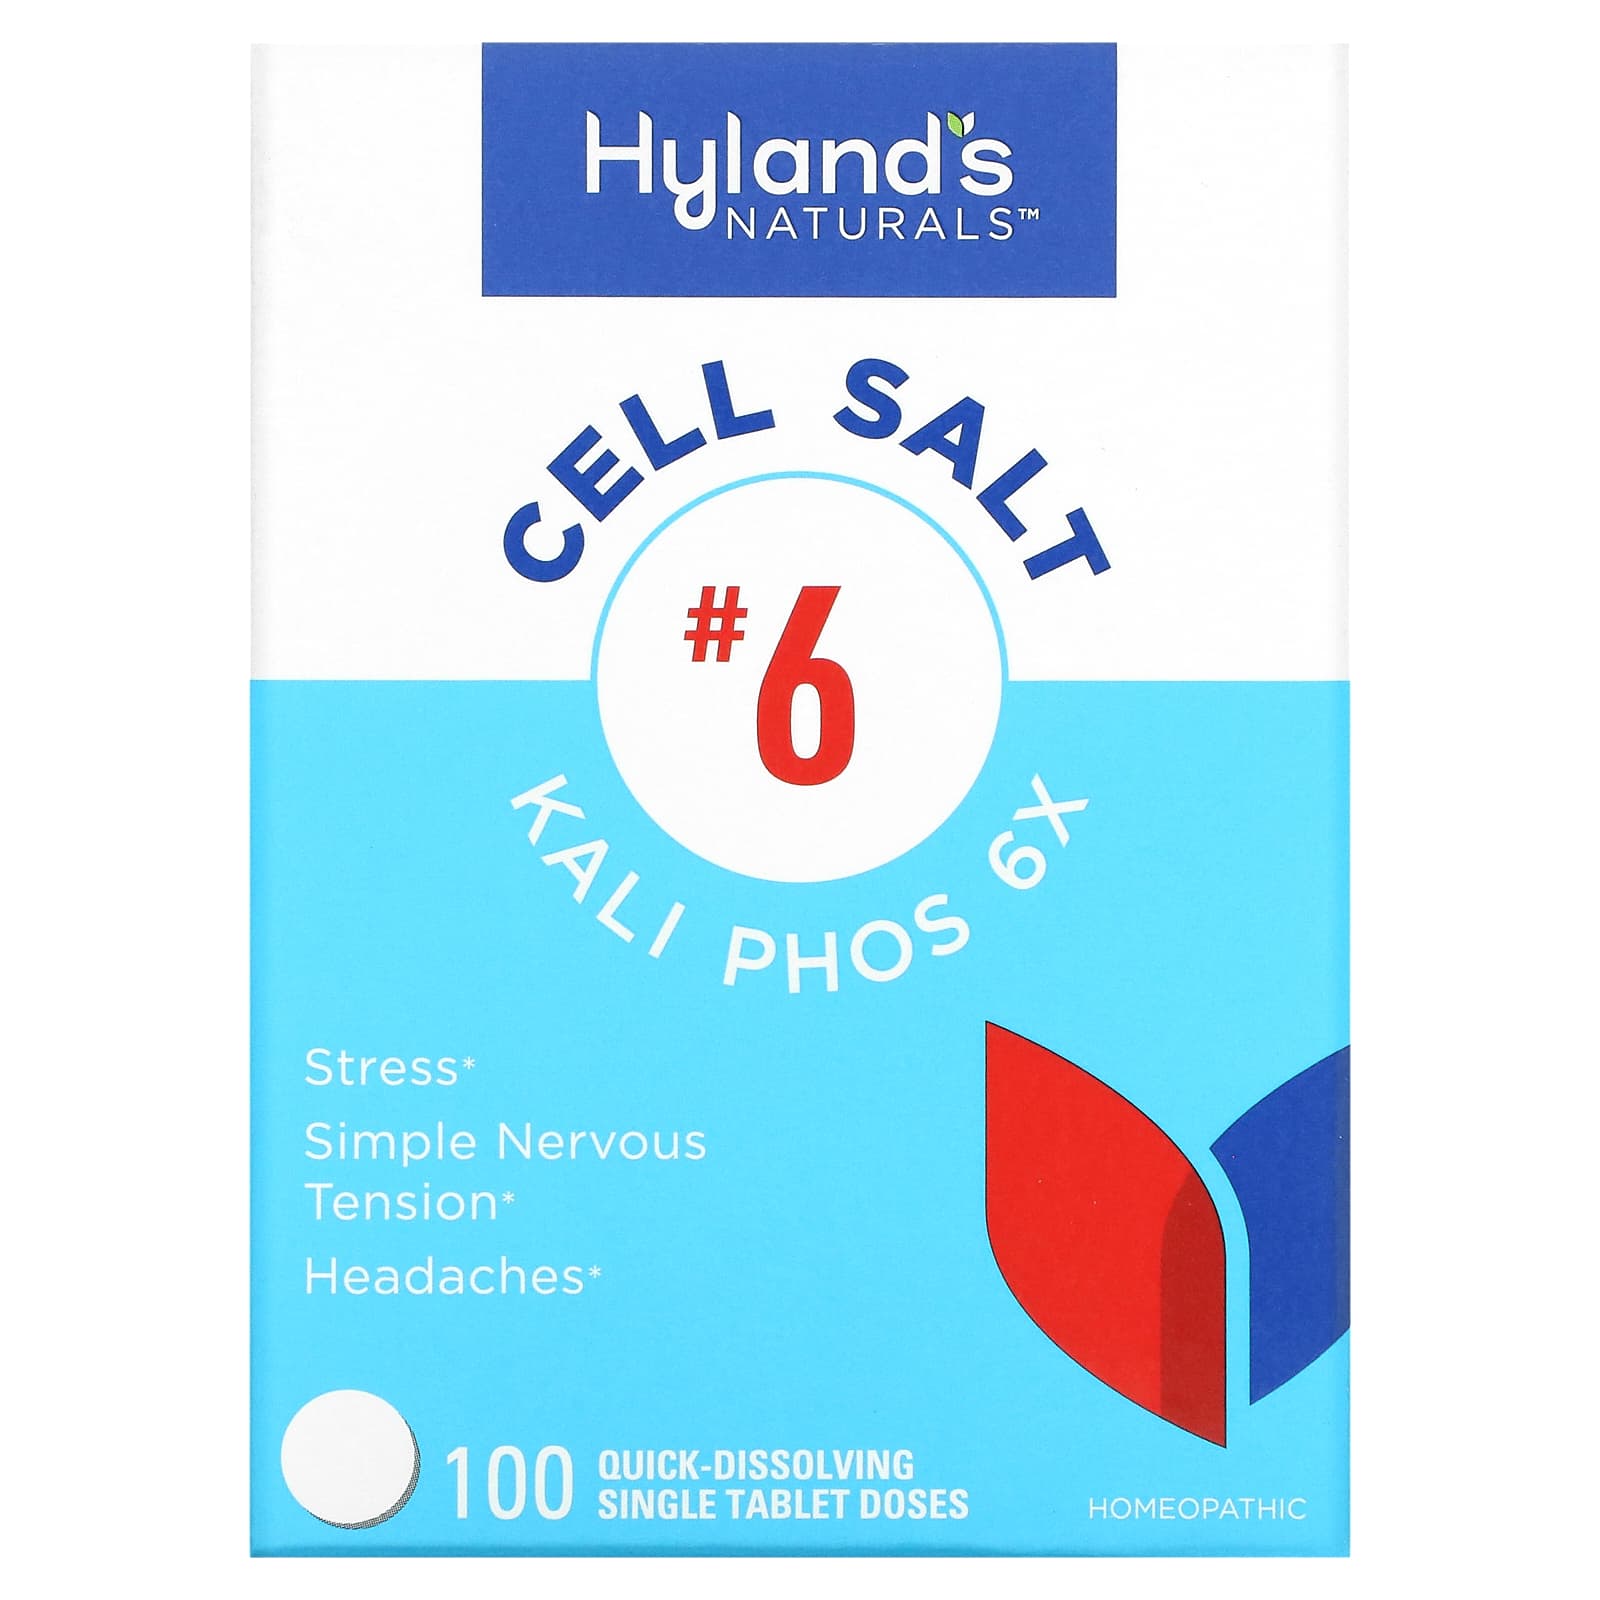 Клеточная Соль №6 / Калий Фосфат 6X Hyland's, 100 быстрорастворимых таблеток hyland s клеточная соль 2 калькарея фосфорика calc phos 6x 100 отдельных быстрорастворимых таблеток